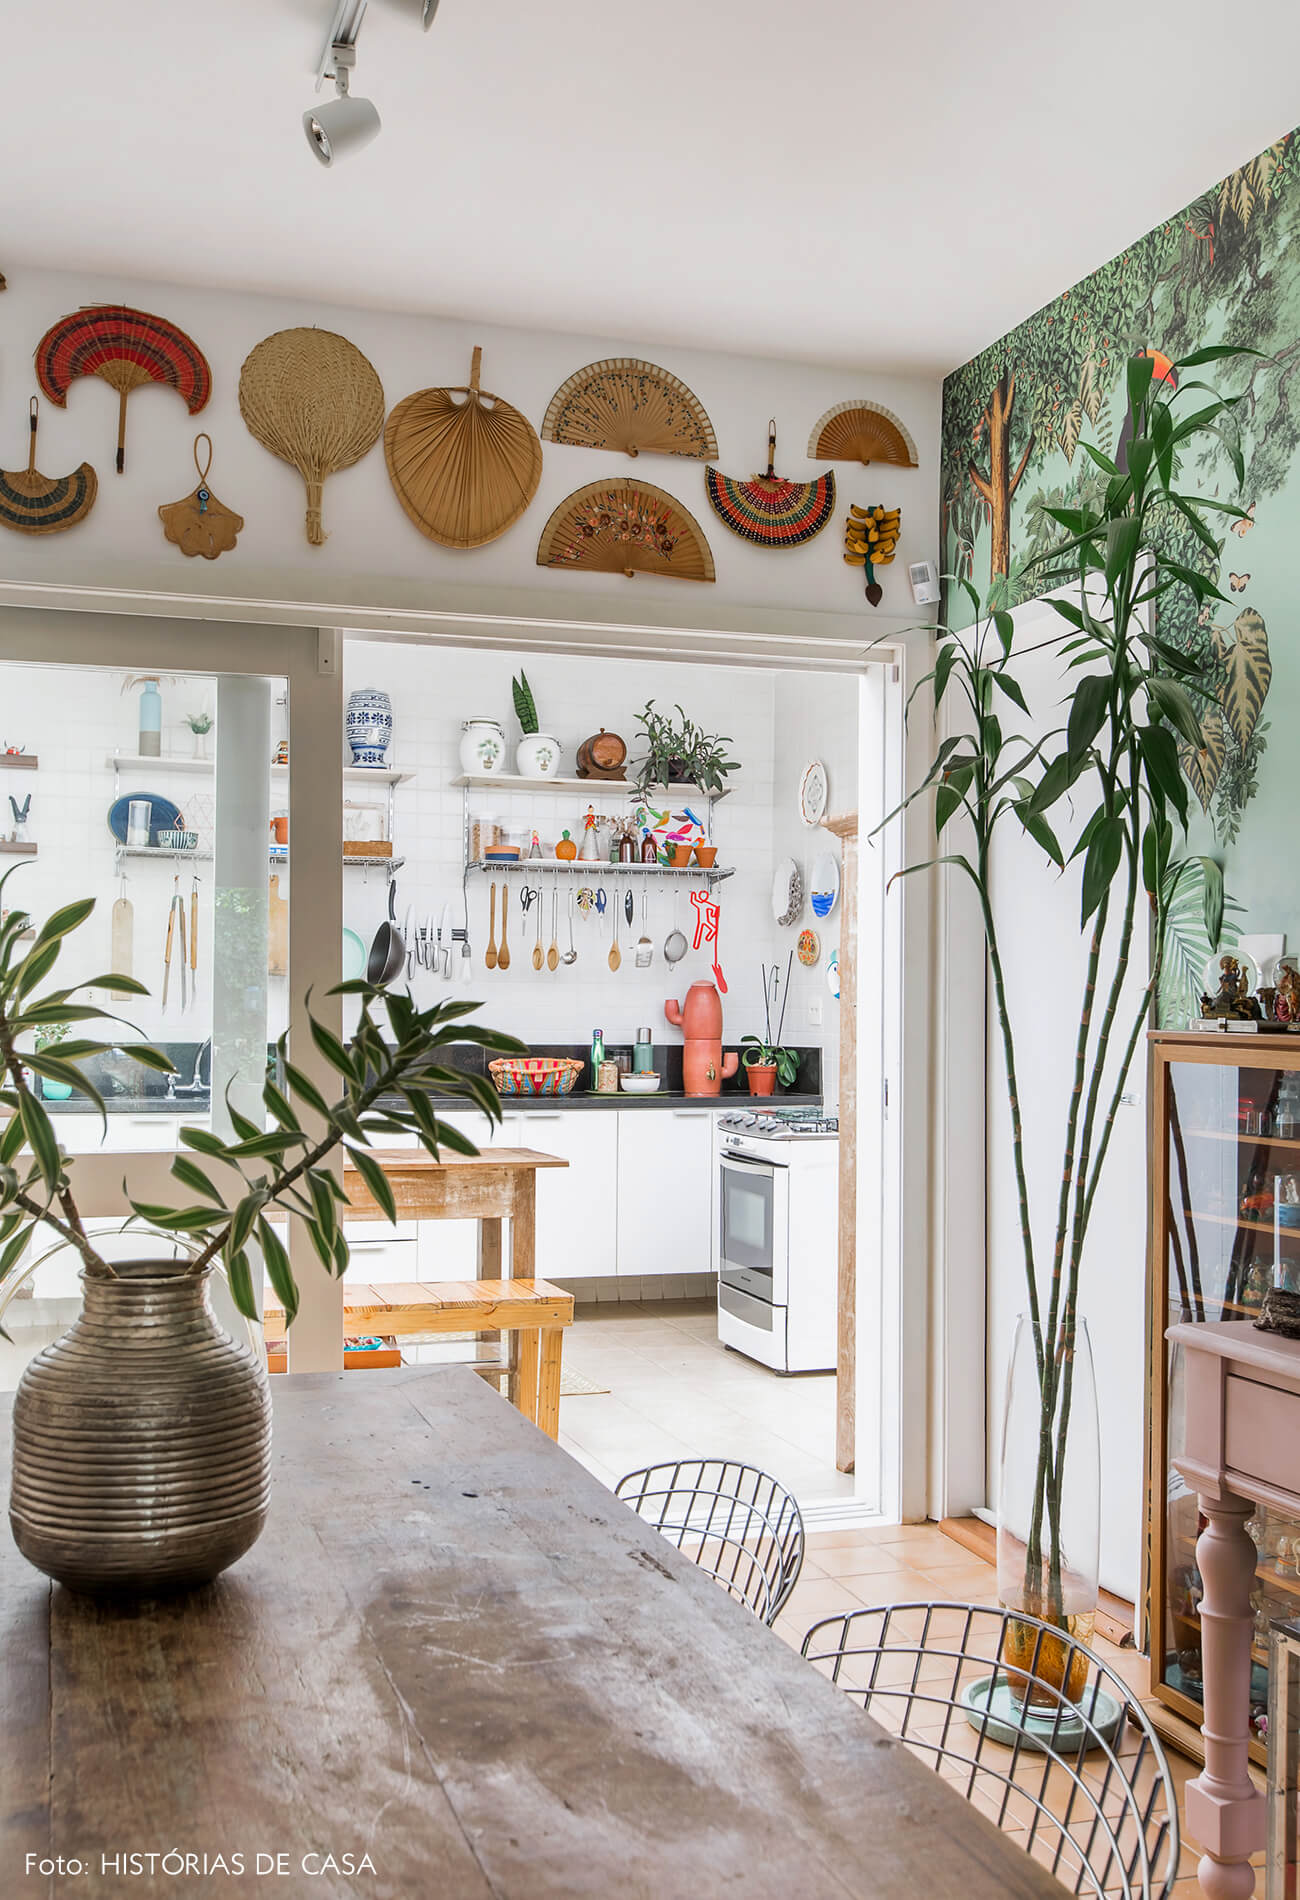 Casa com cozinha integrada à sala por portas de correr de vidro